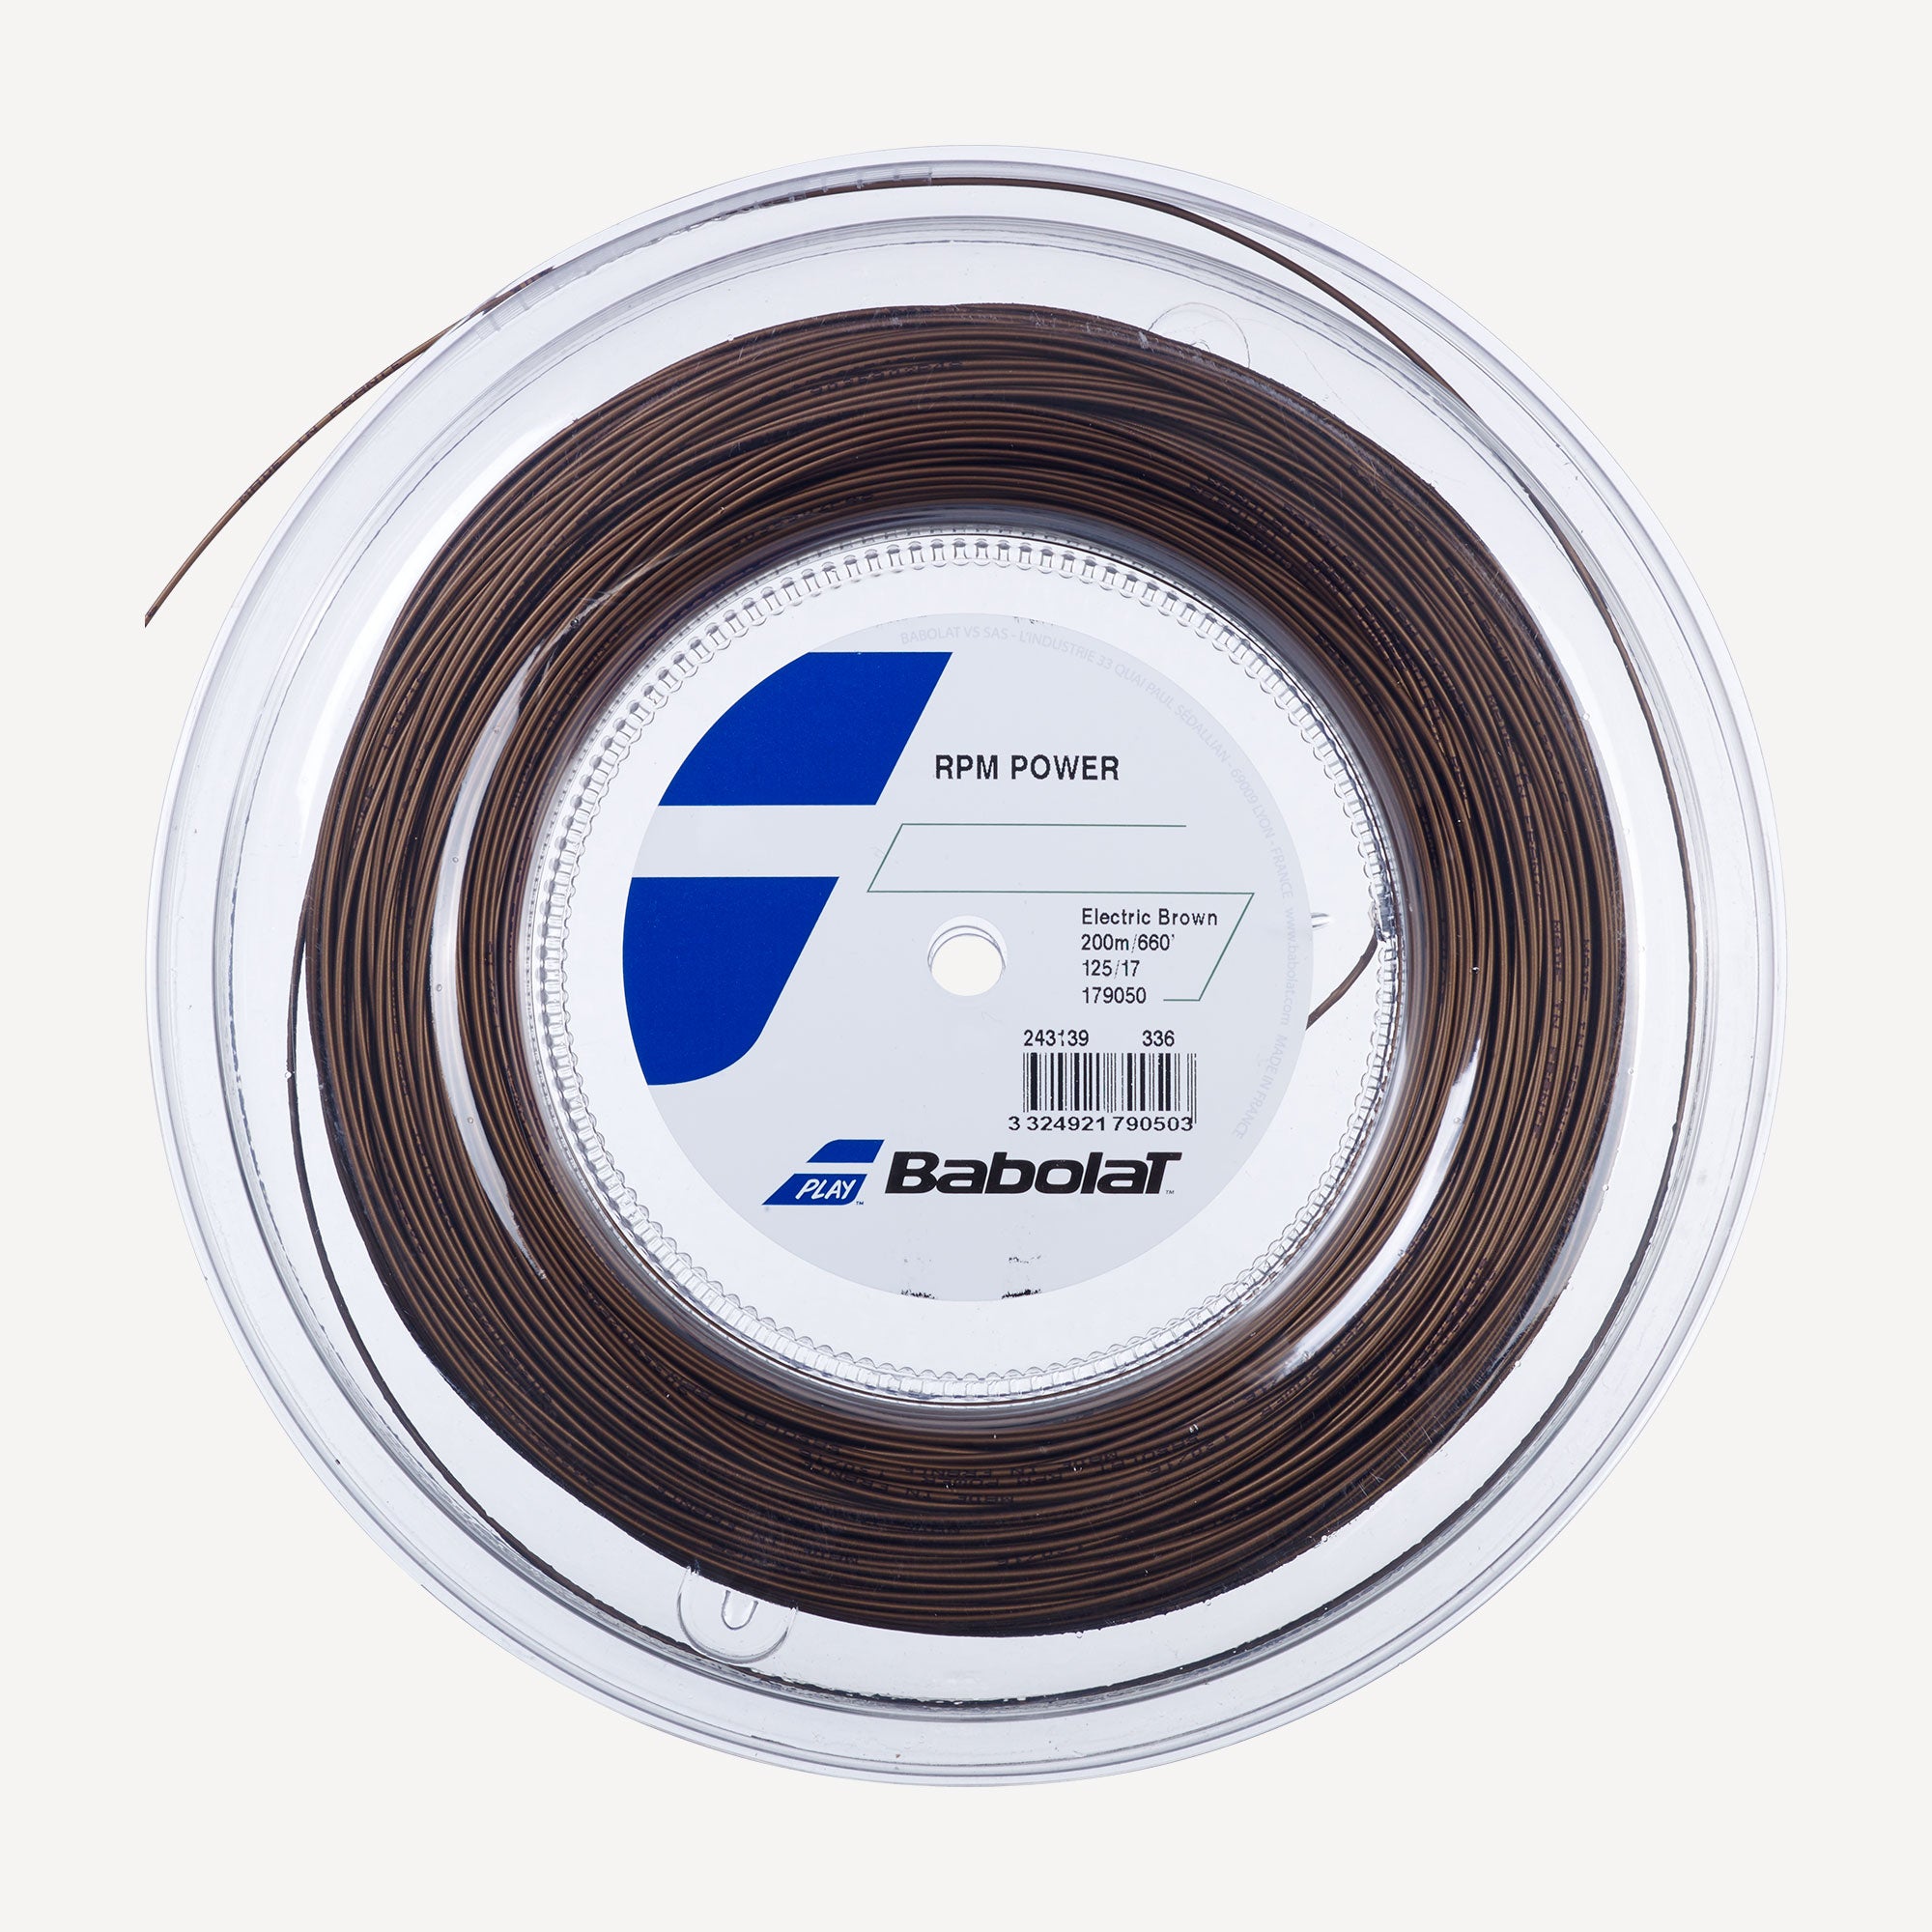 Babolat RPM Power Tennis String Reel 200 m - Brown